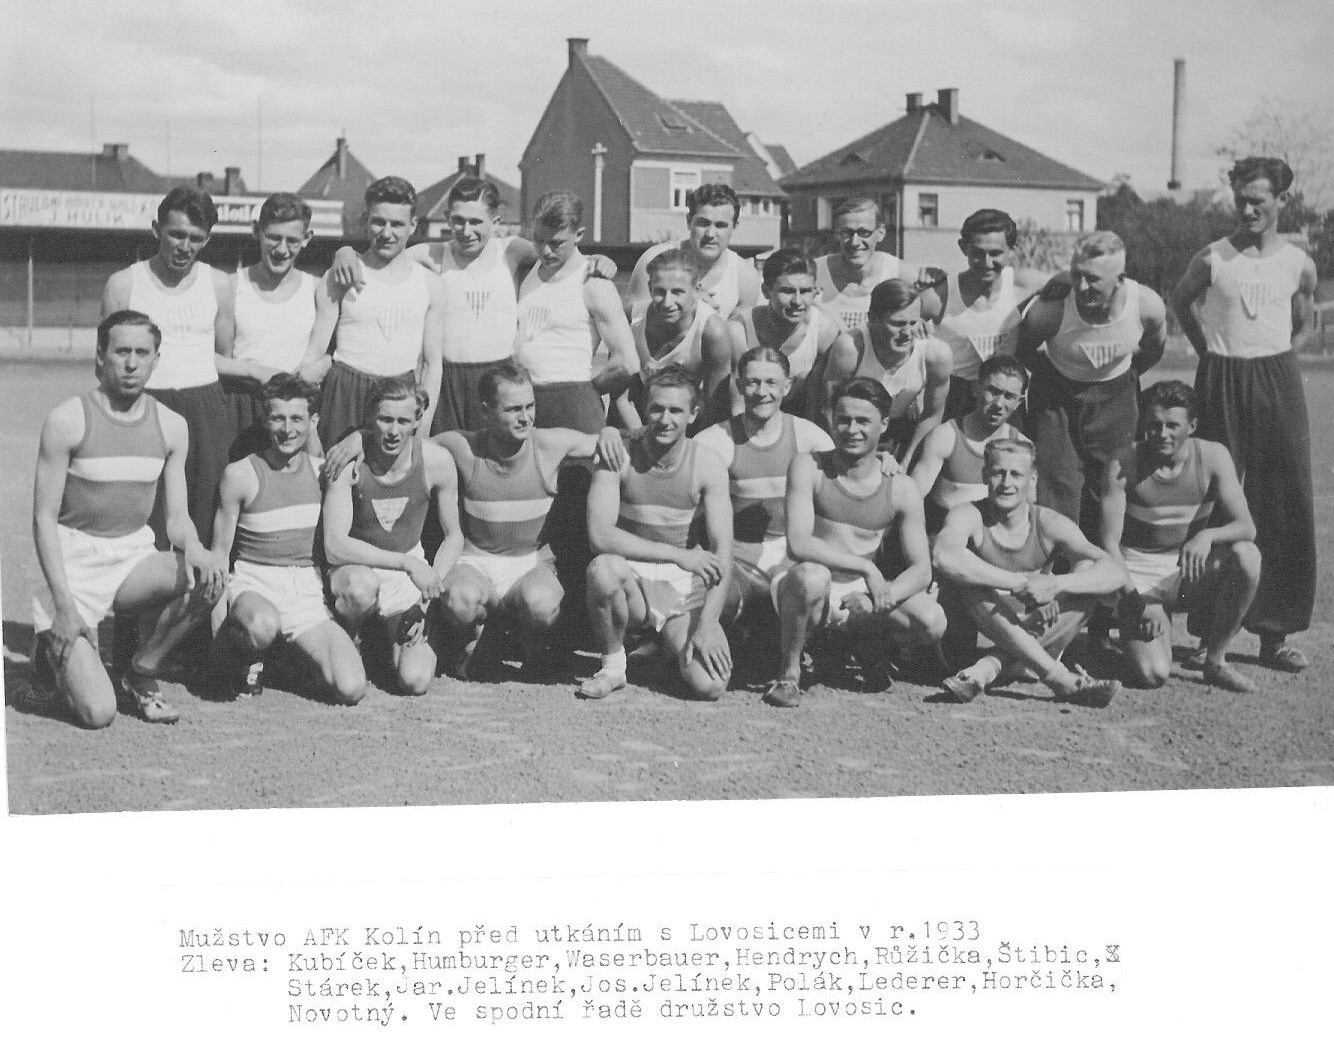 1933: Družstvo mužů před utkáním v Lovosicích